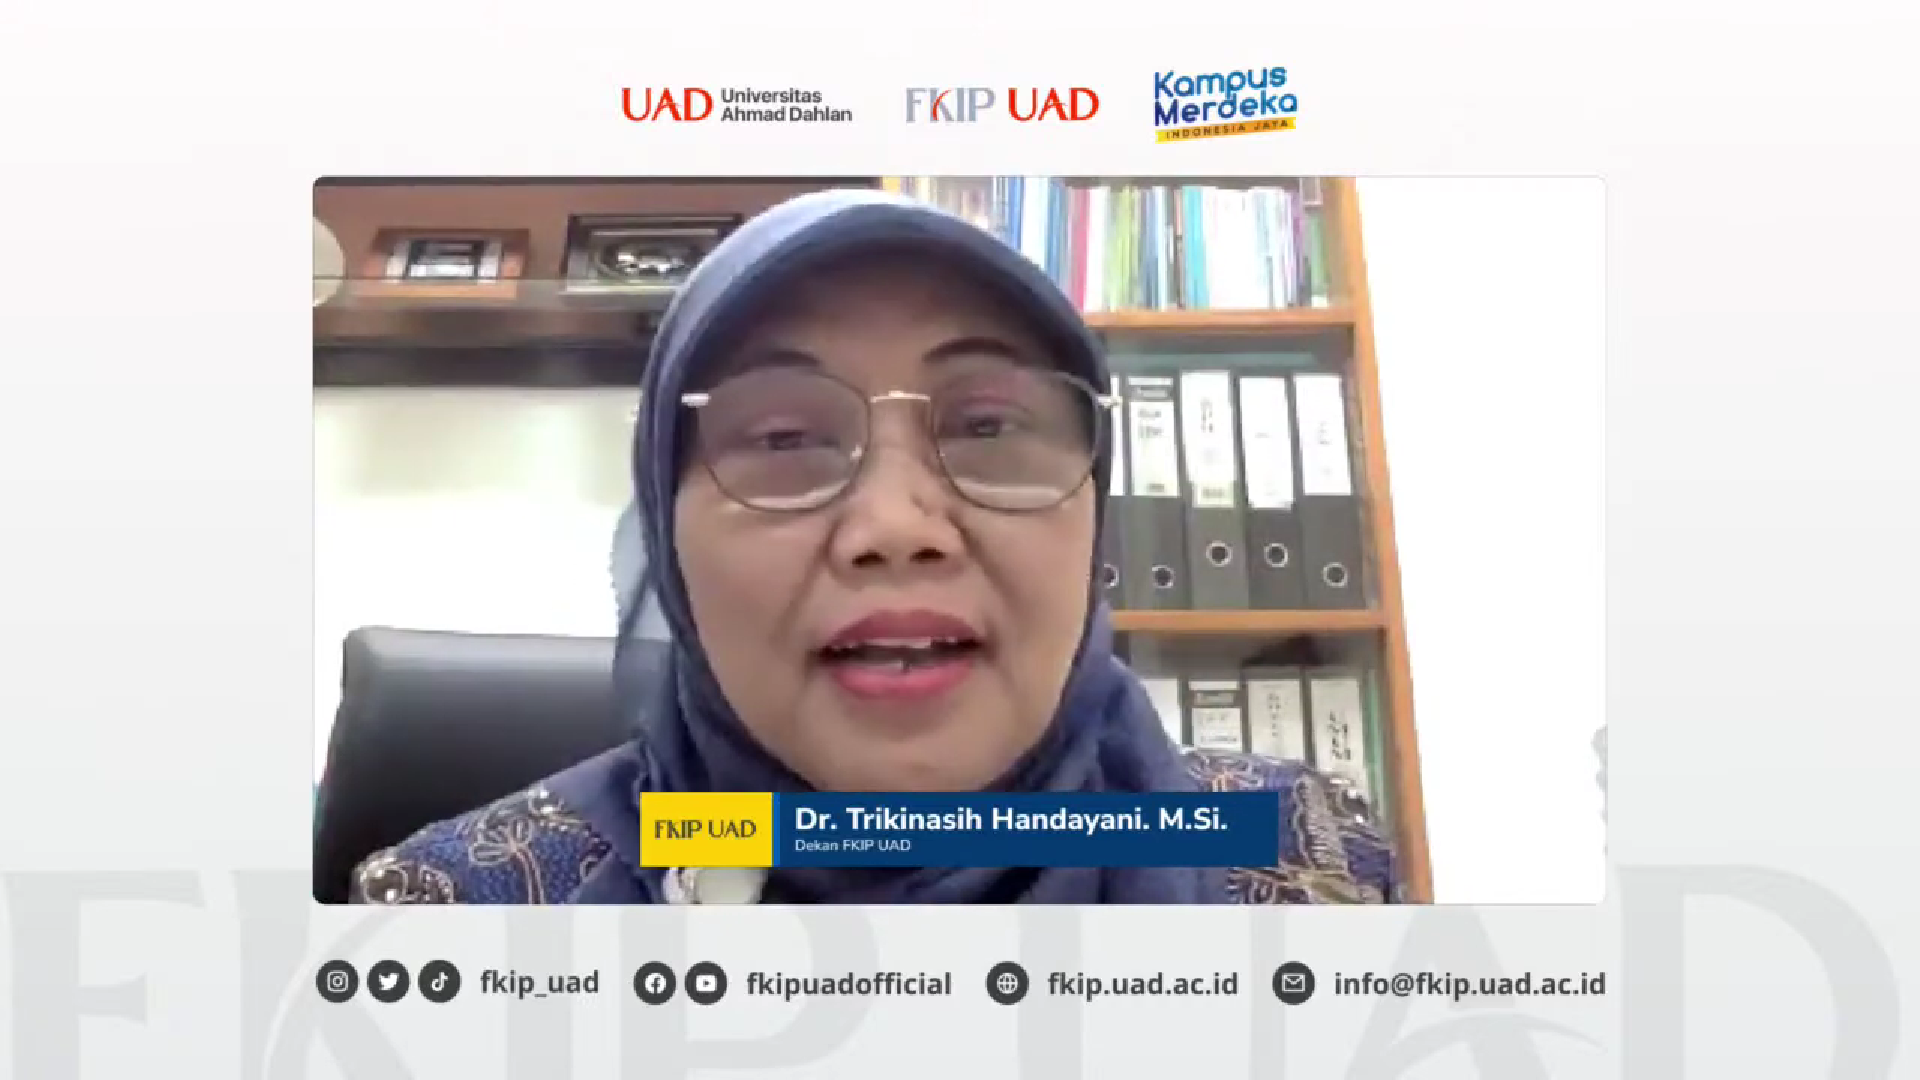 Dekan FKIP UAD, Dr. Trikinasih Handayani, M.Si.